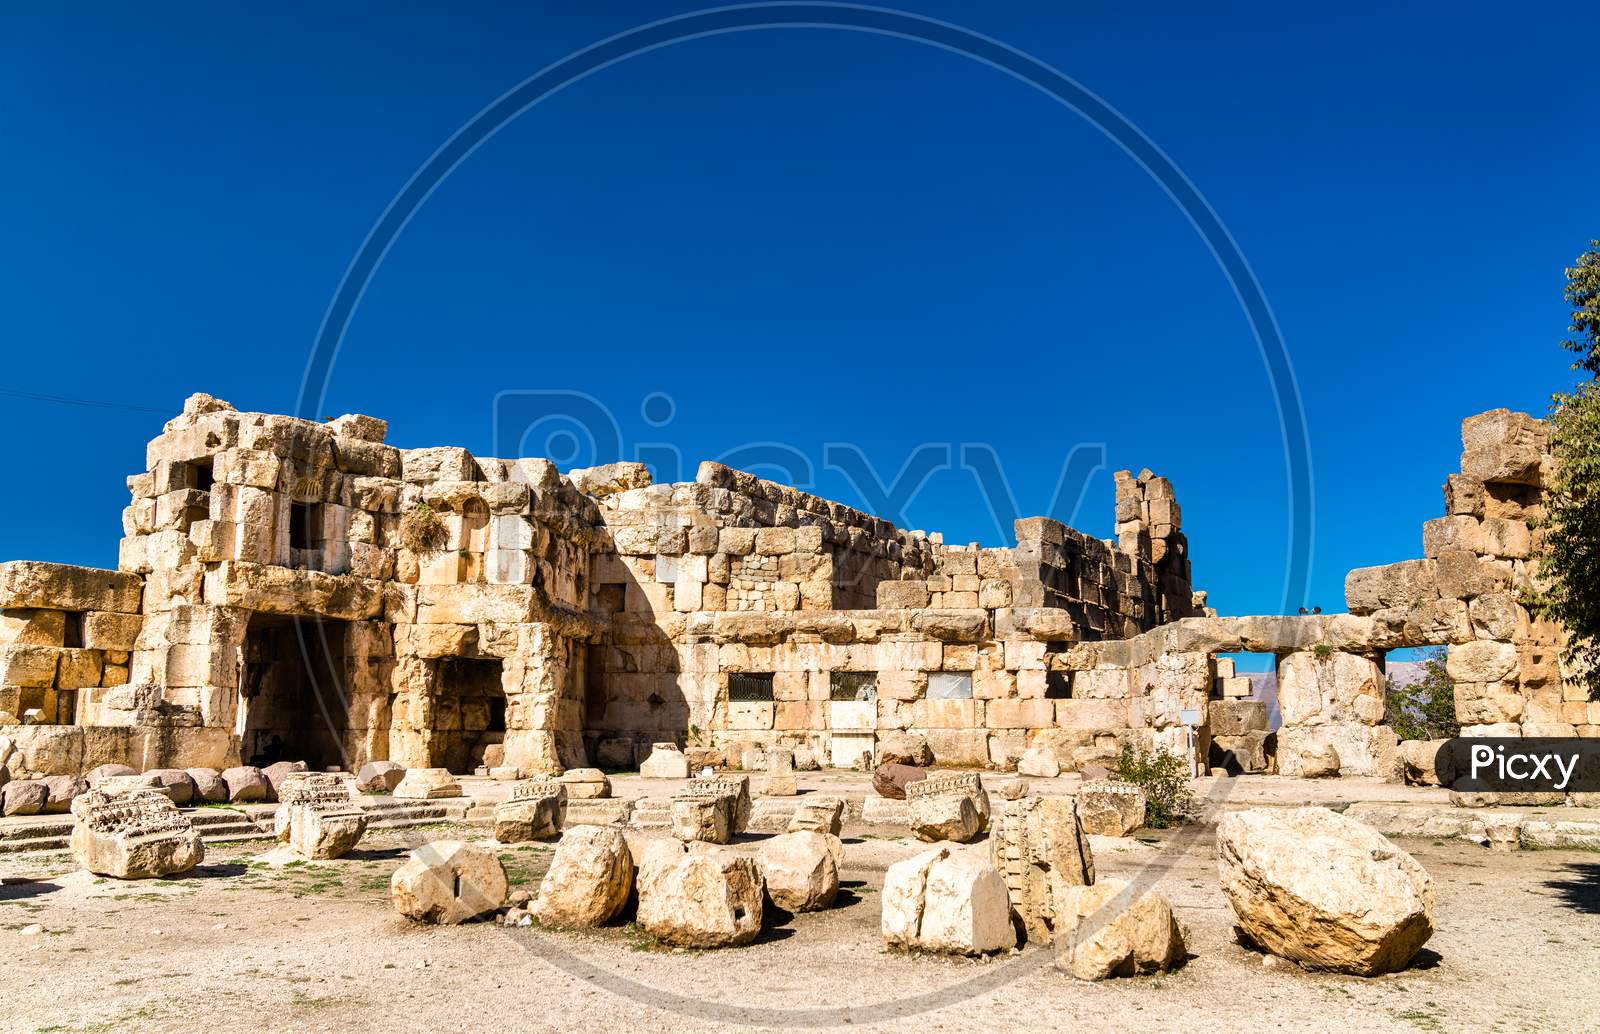 Hexagonal Court Of The Temple Of Jupiter At Baalbek, Lebanon